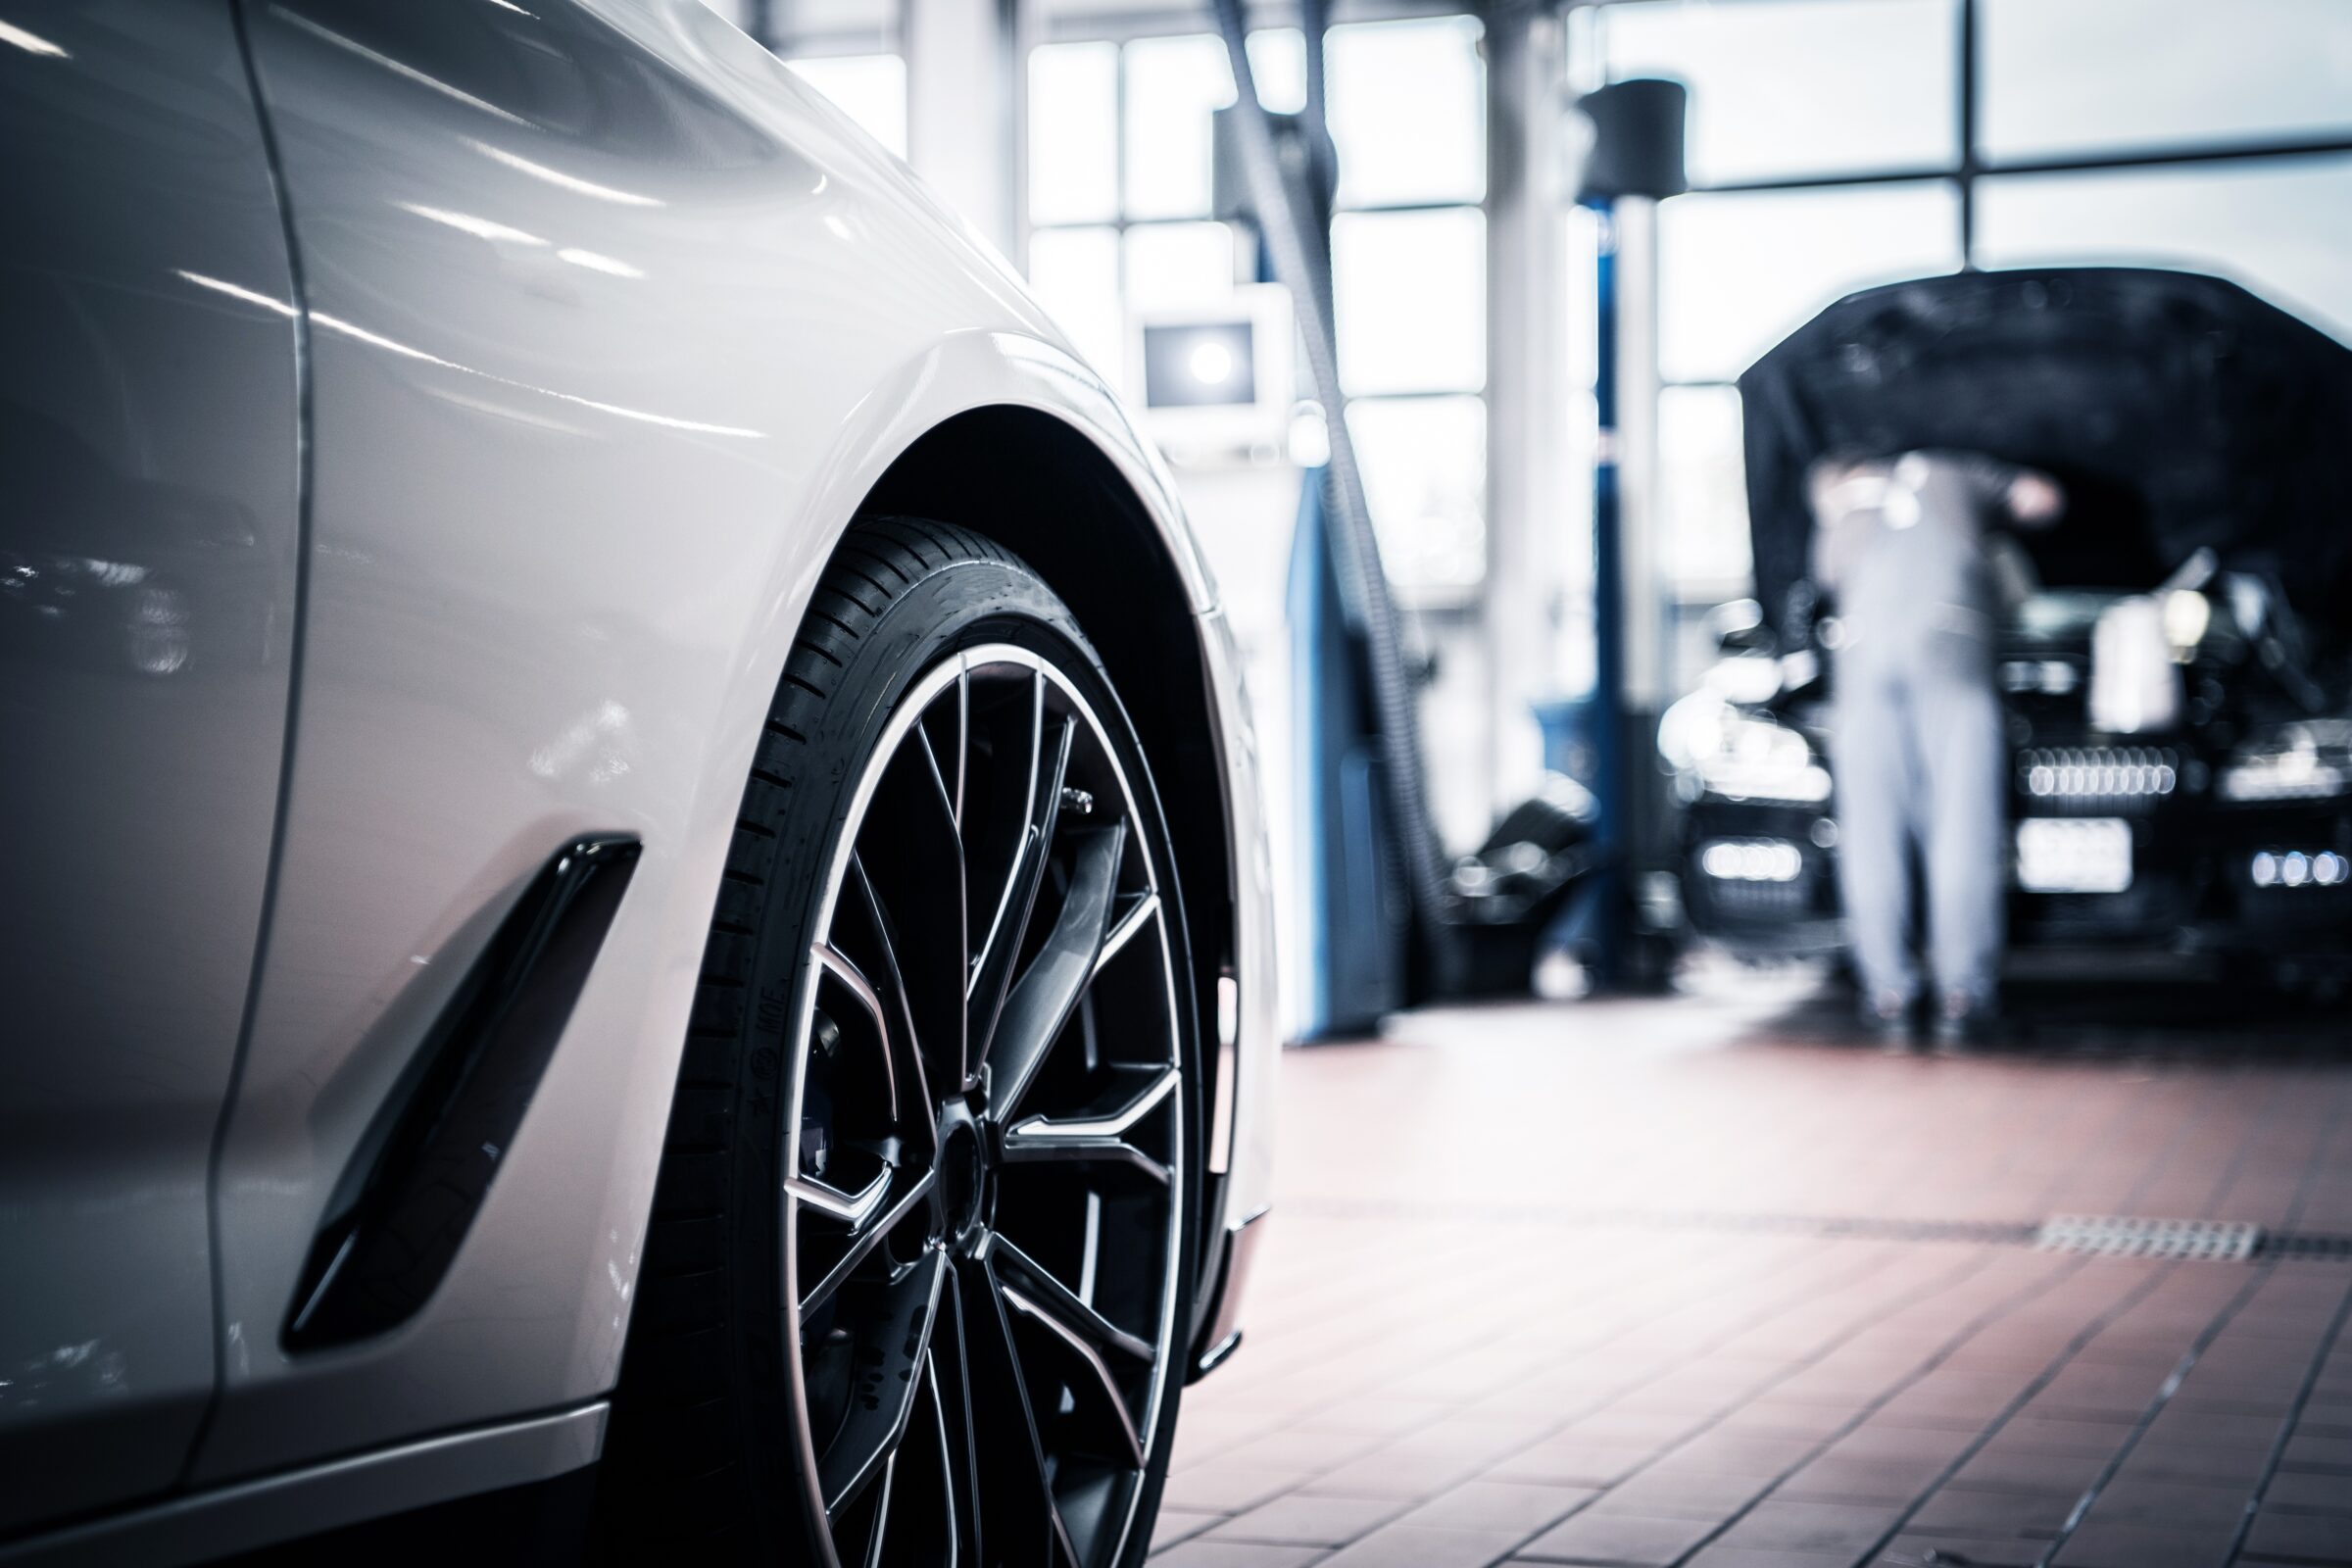 SALE PENDING: Premier Automotive Performance & Repair